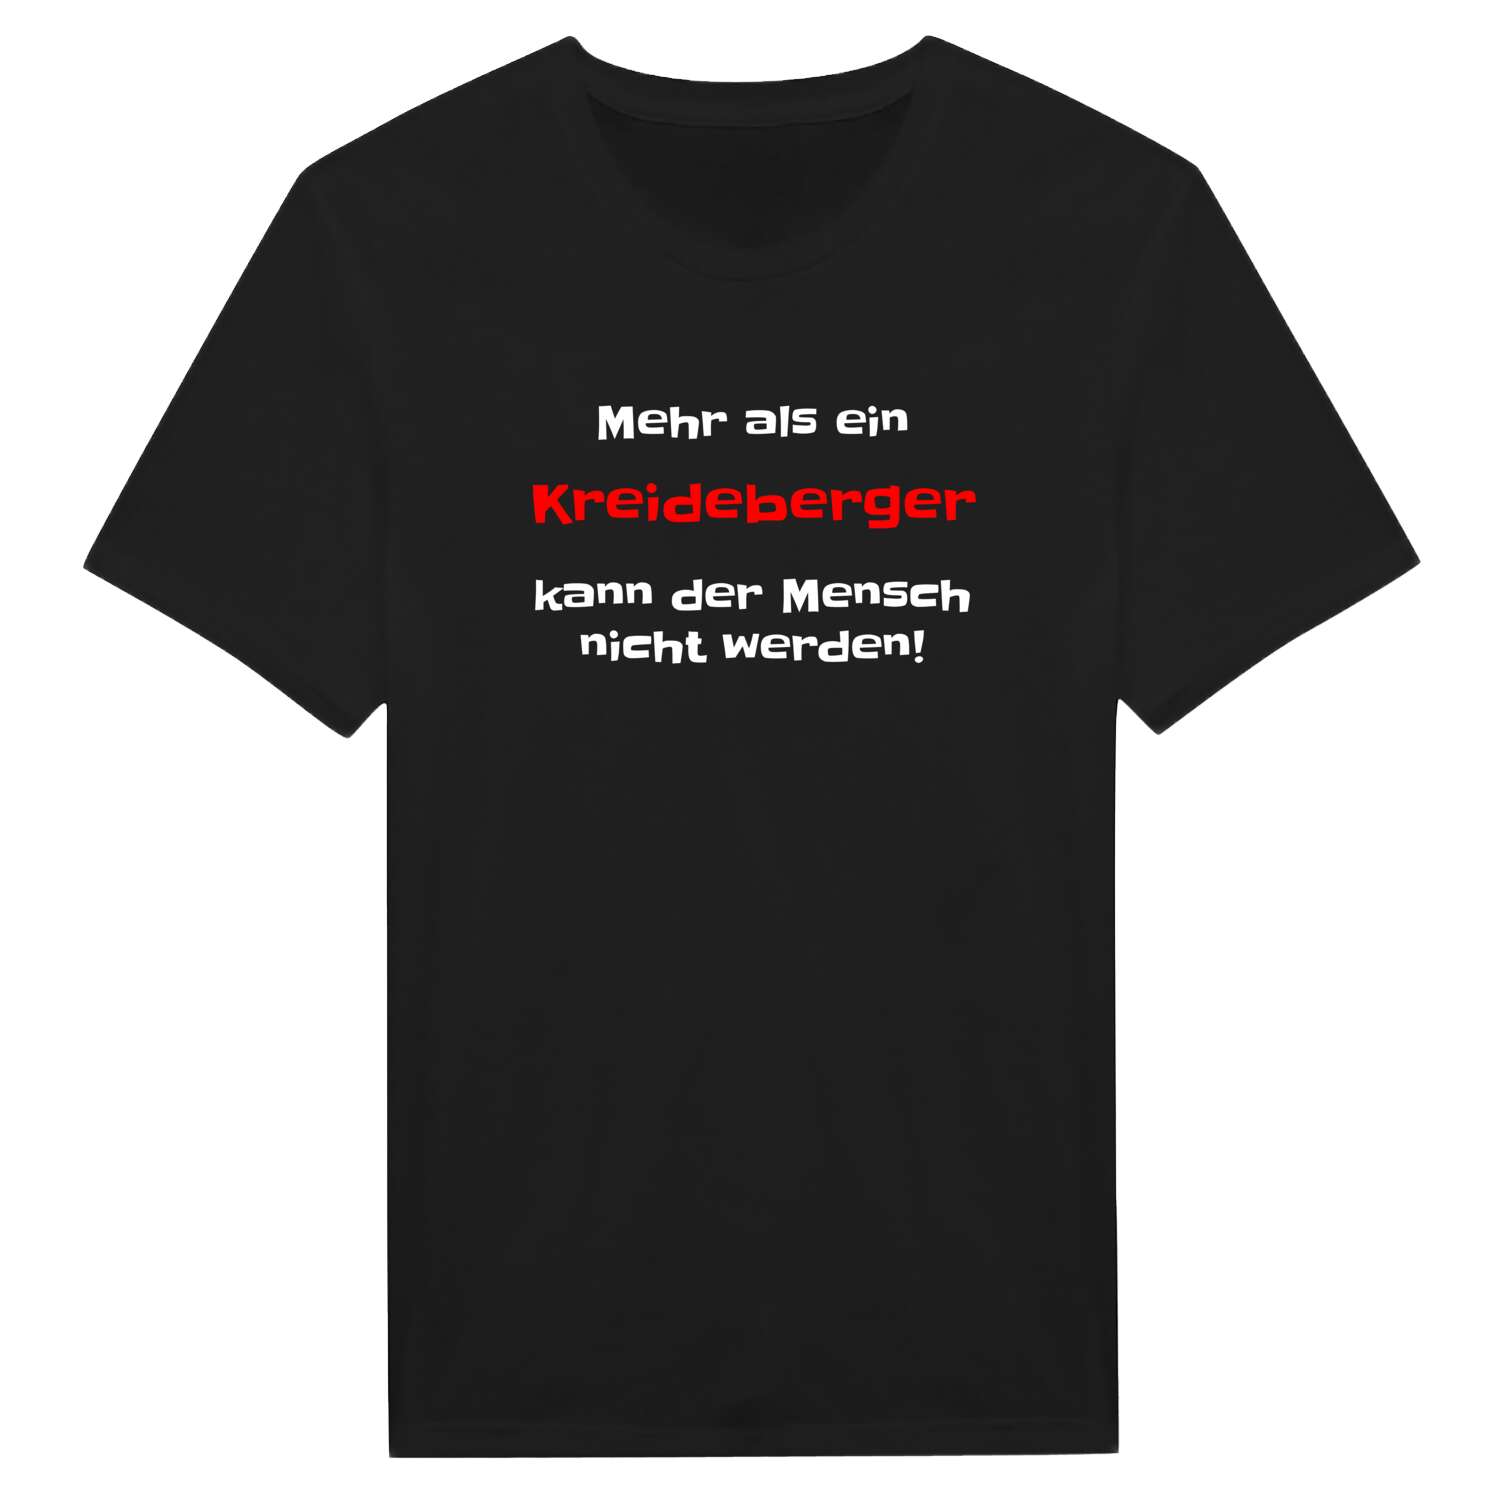 Kreideberg T-Shirt »Mehr als ein«